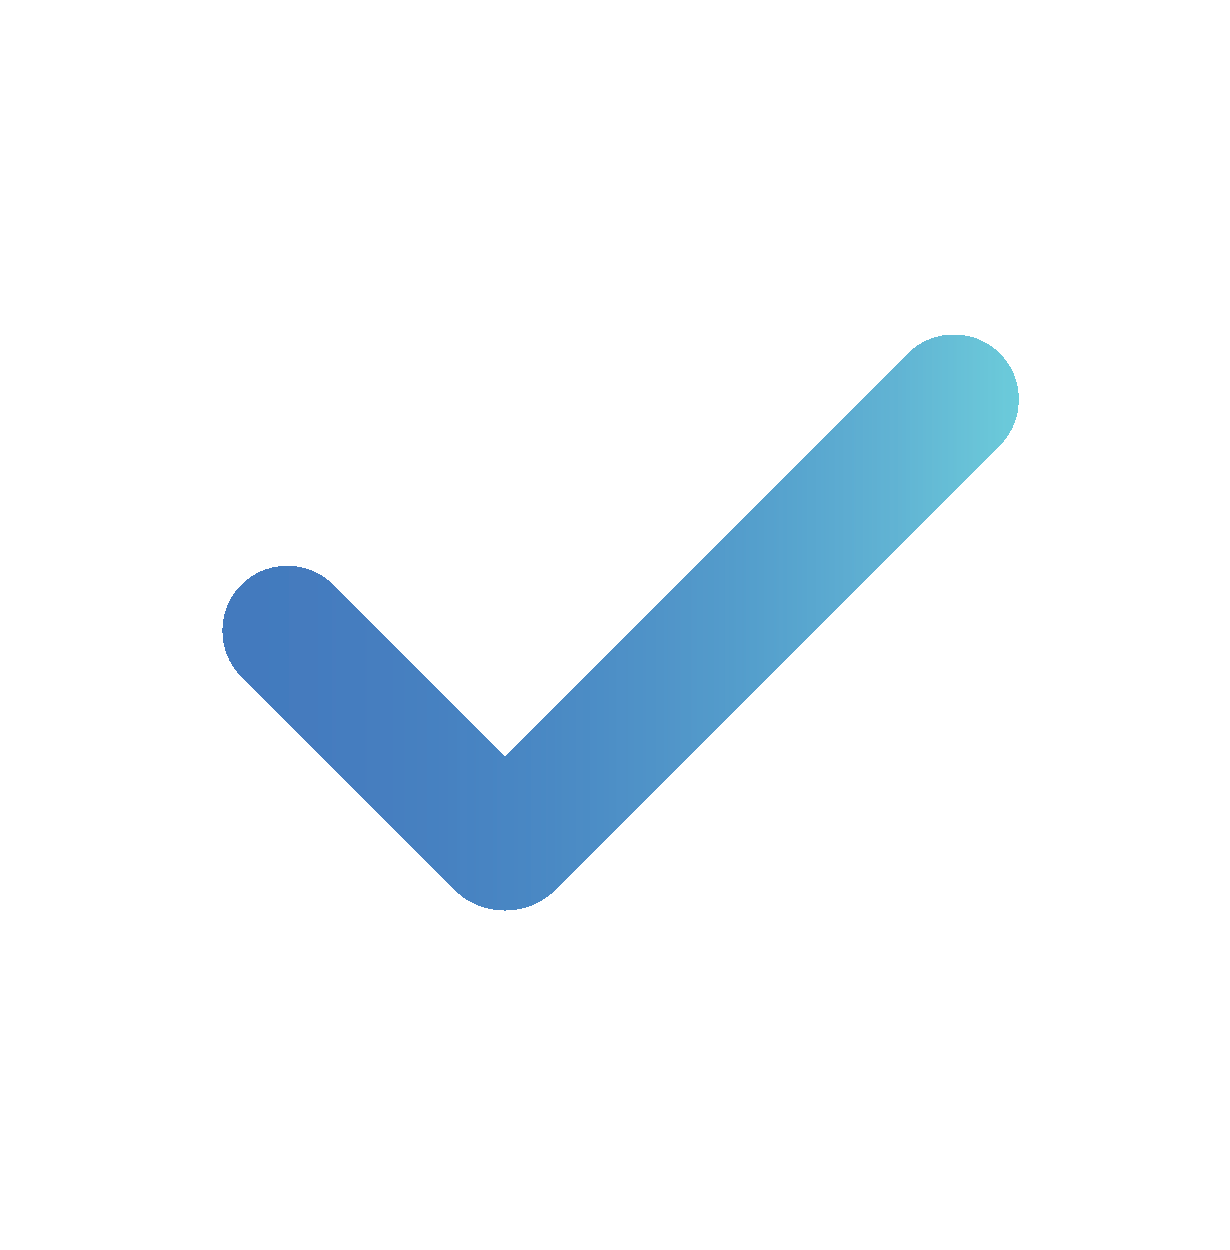 blue check icon